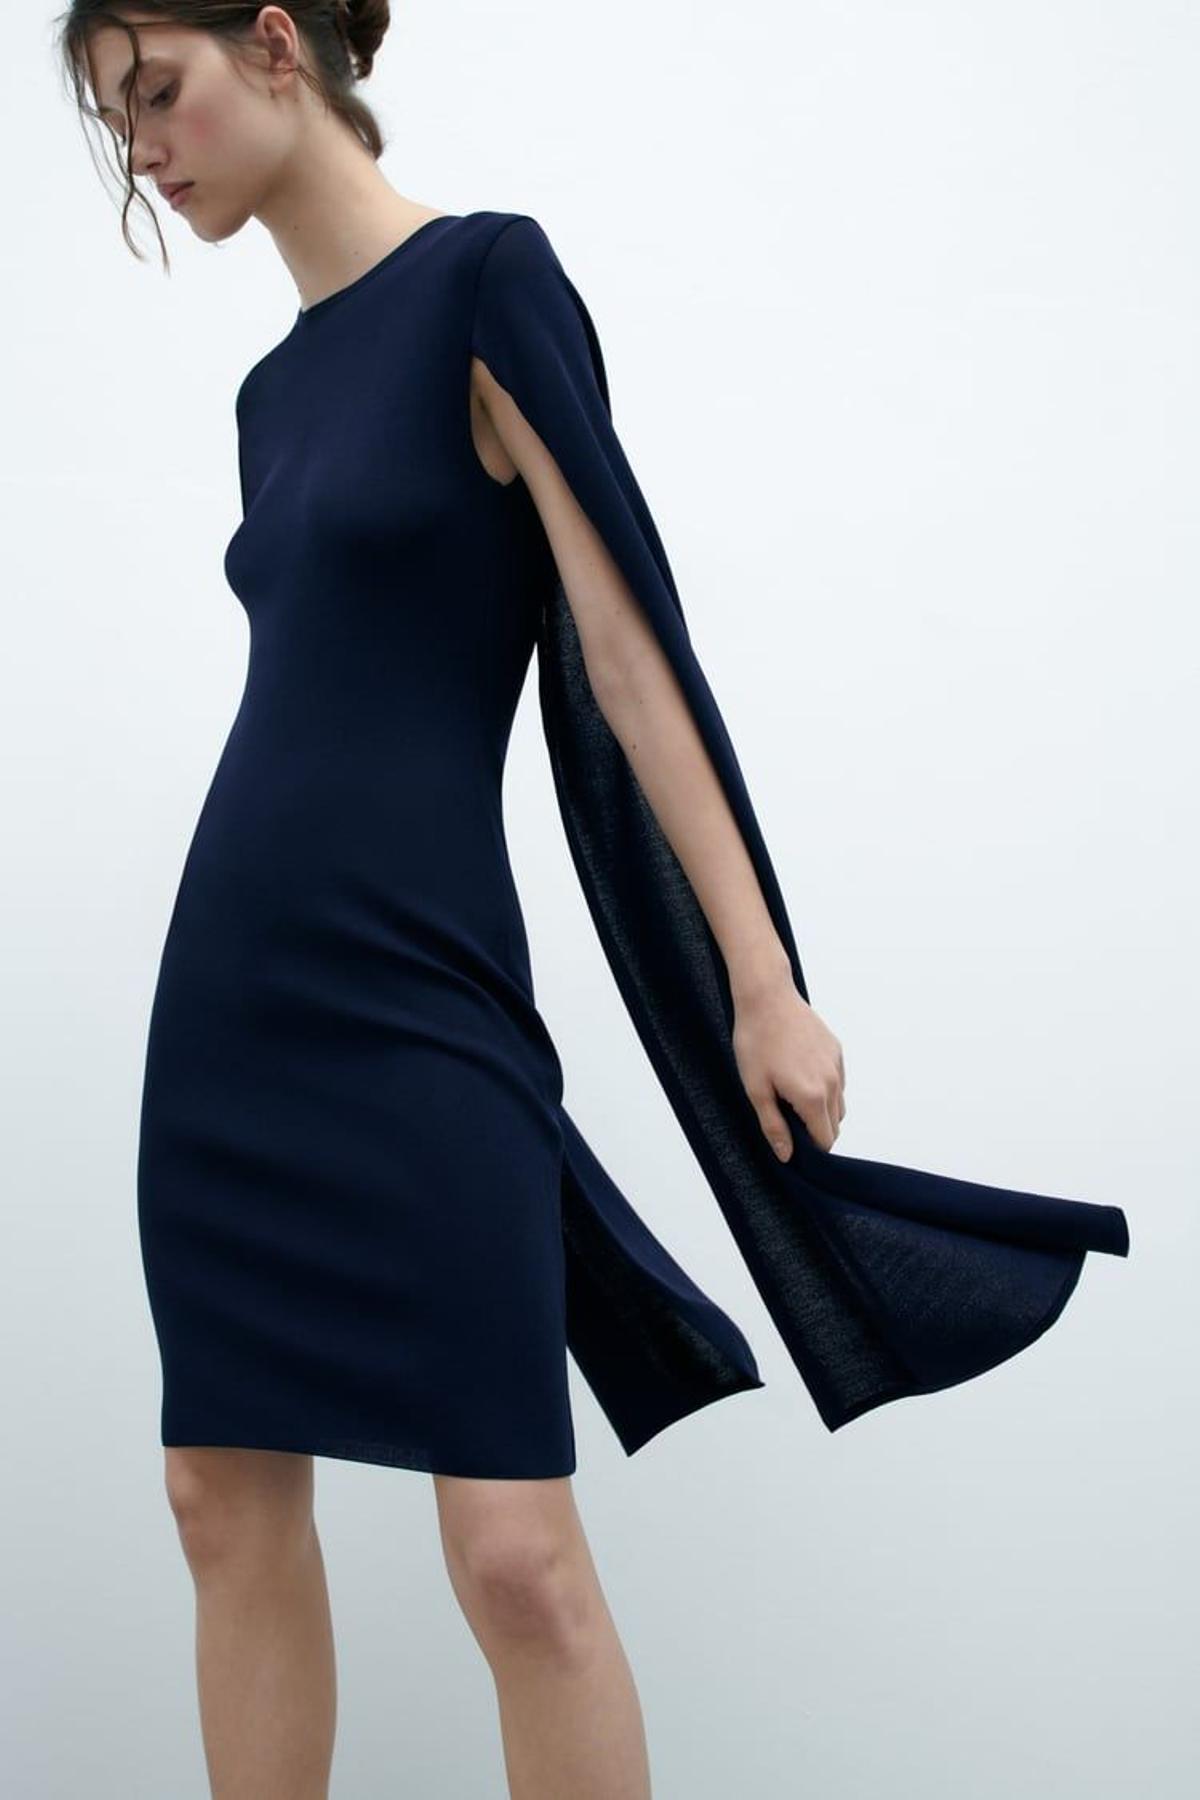 ZARA | Tres vestidos con capa ideales que demuestran que esta moda ha vuelto